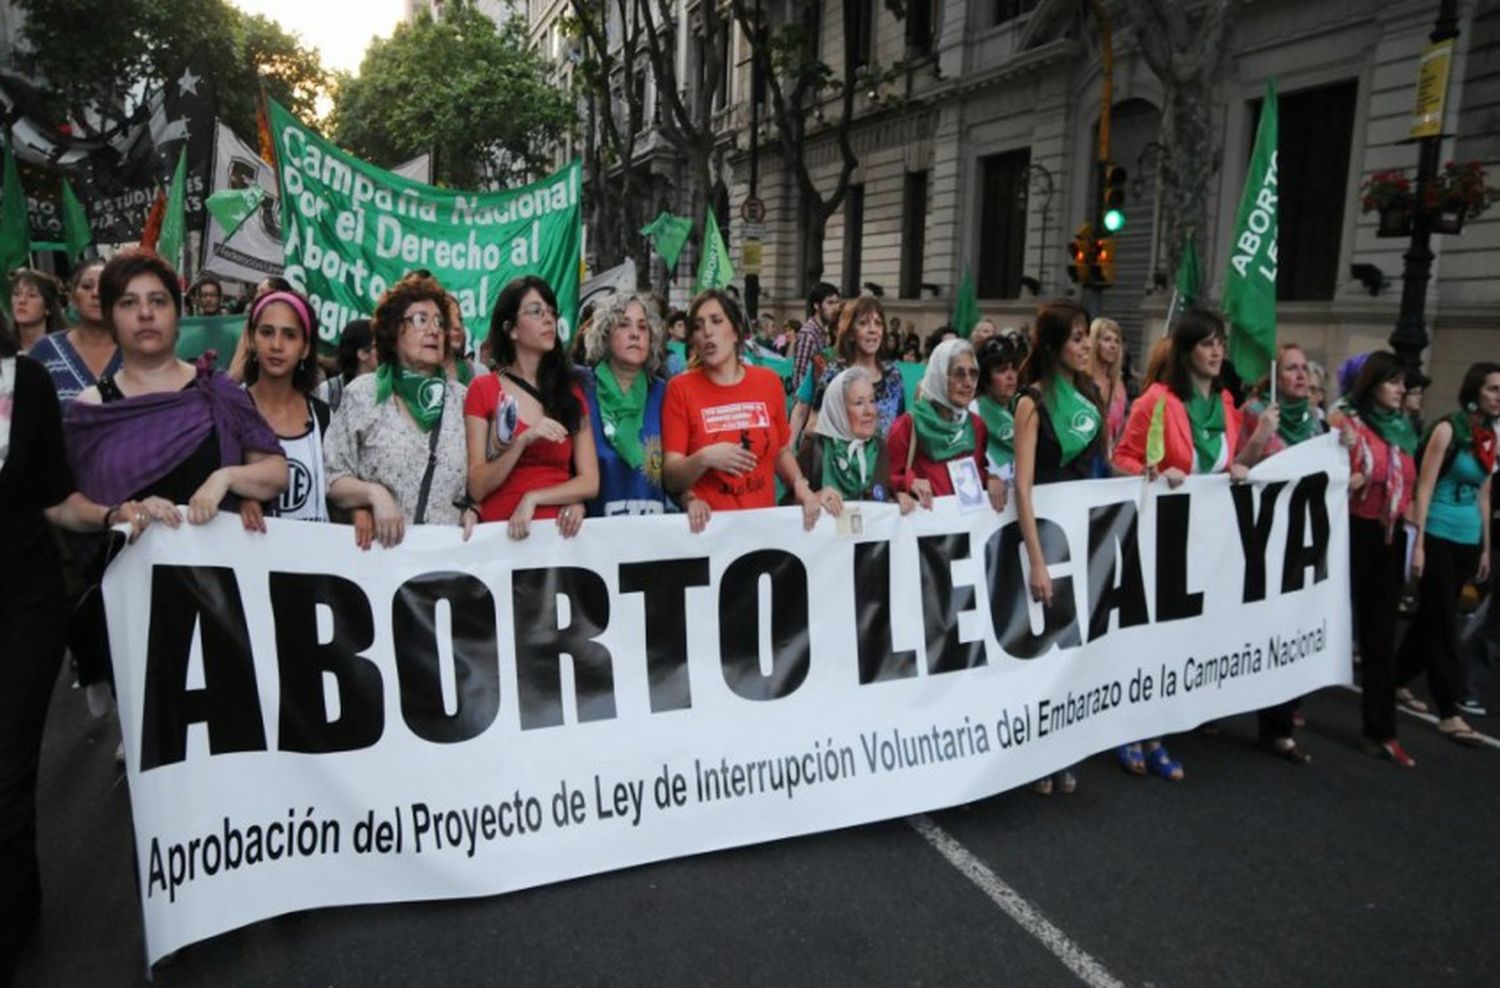 Aborto: "Hasta las 14 semanas no hay vida cerebral, no es persona"